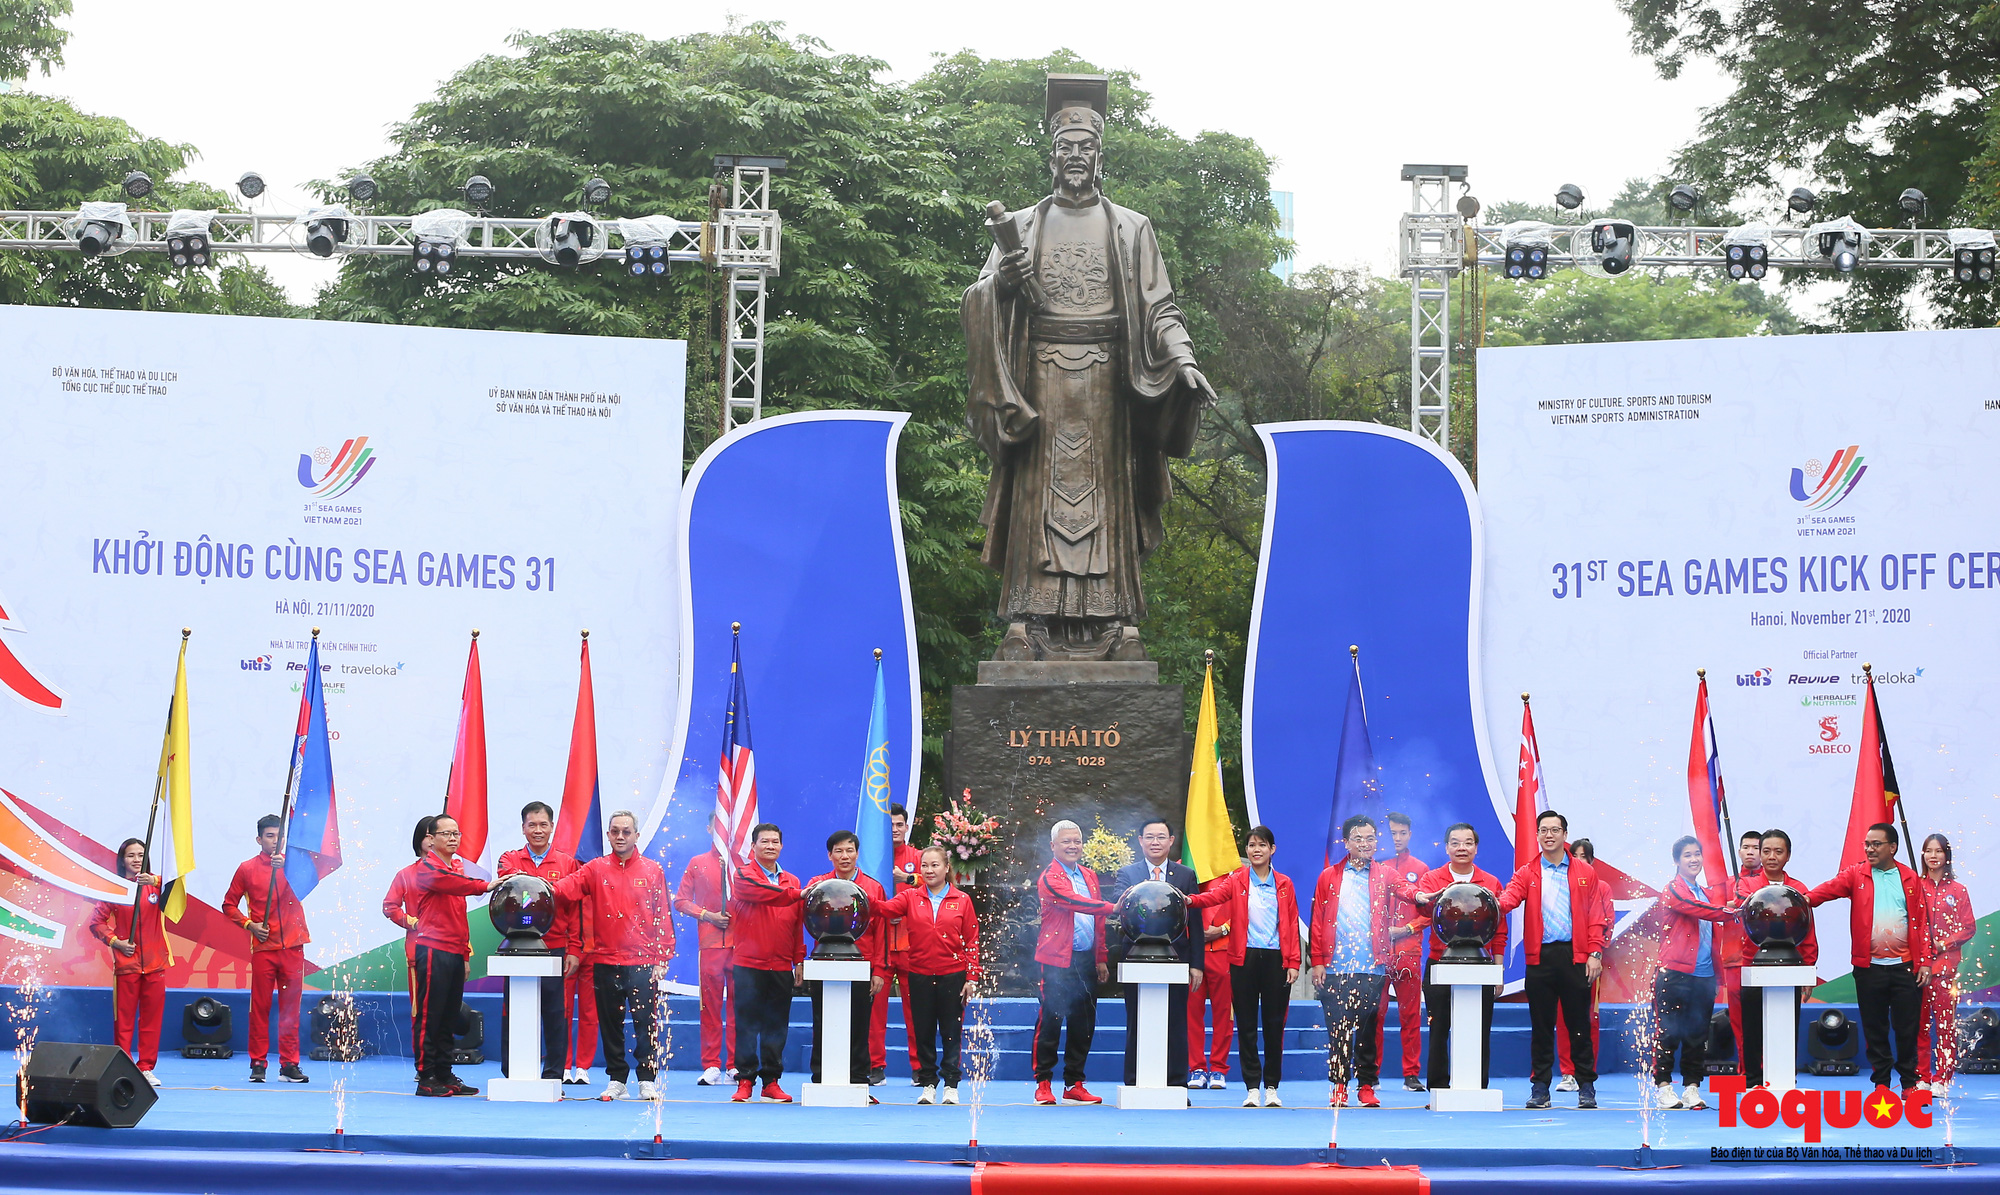 Khởi động cùng SEA Games 31 - Việt Nam sẵn sàng cho Đại hội thể thao lớn nhất Đông Nam Á